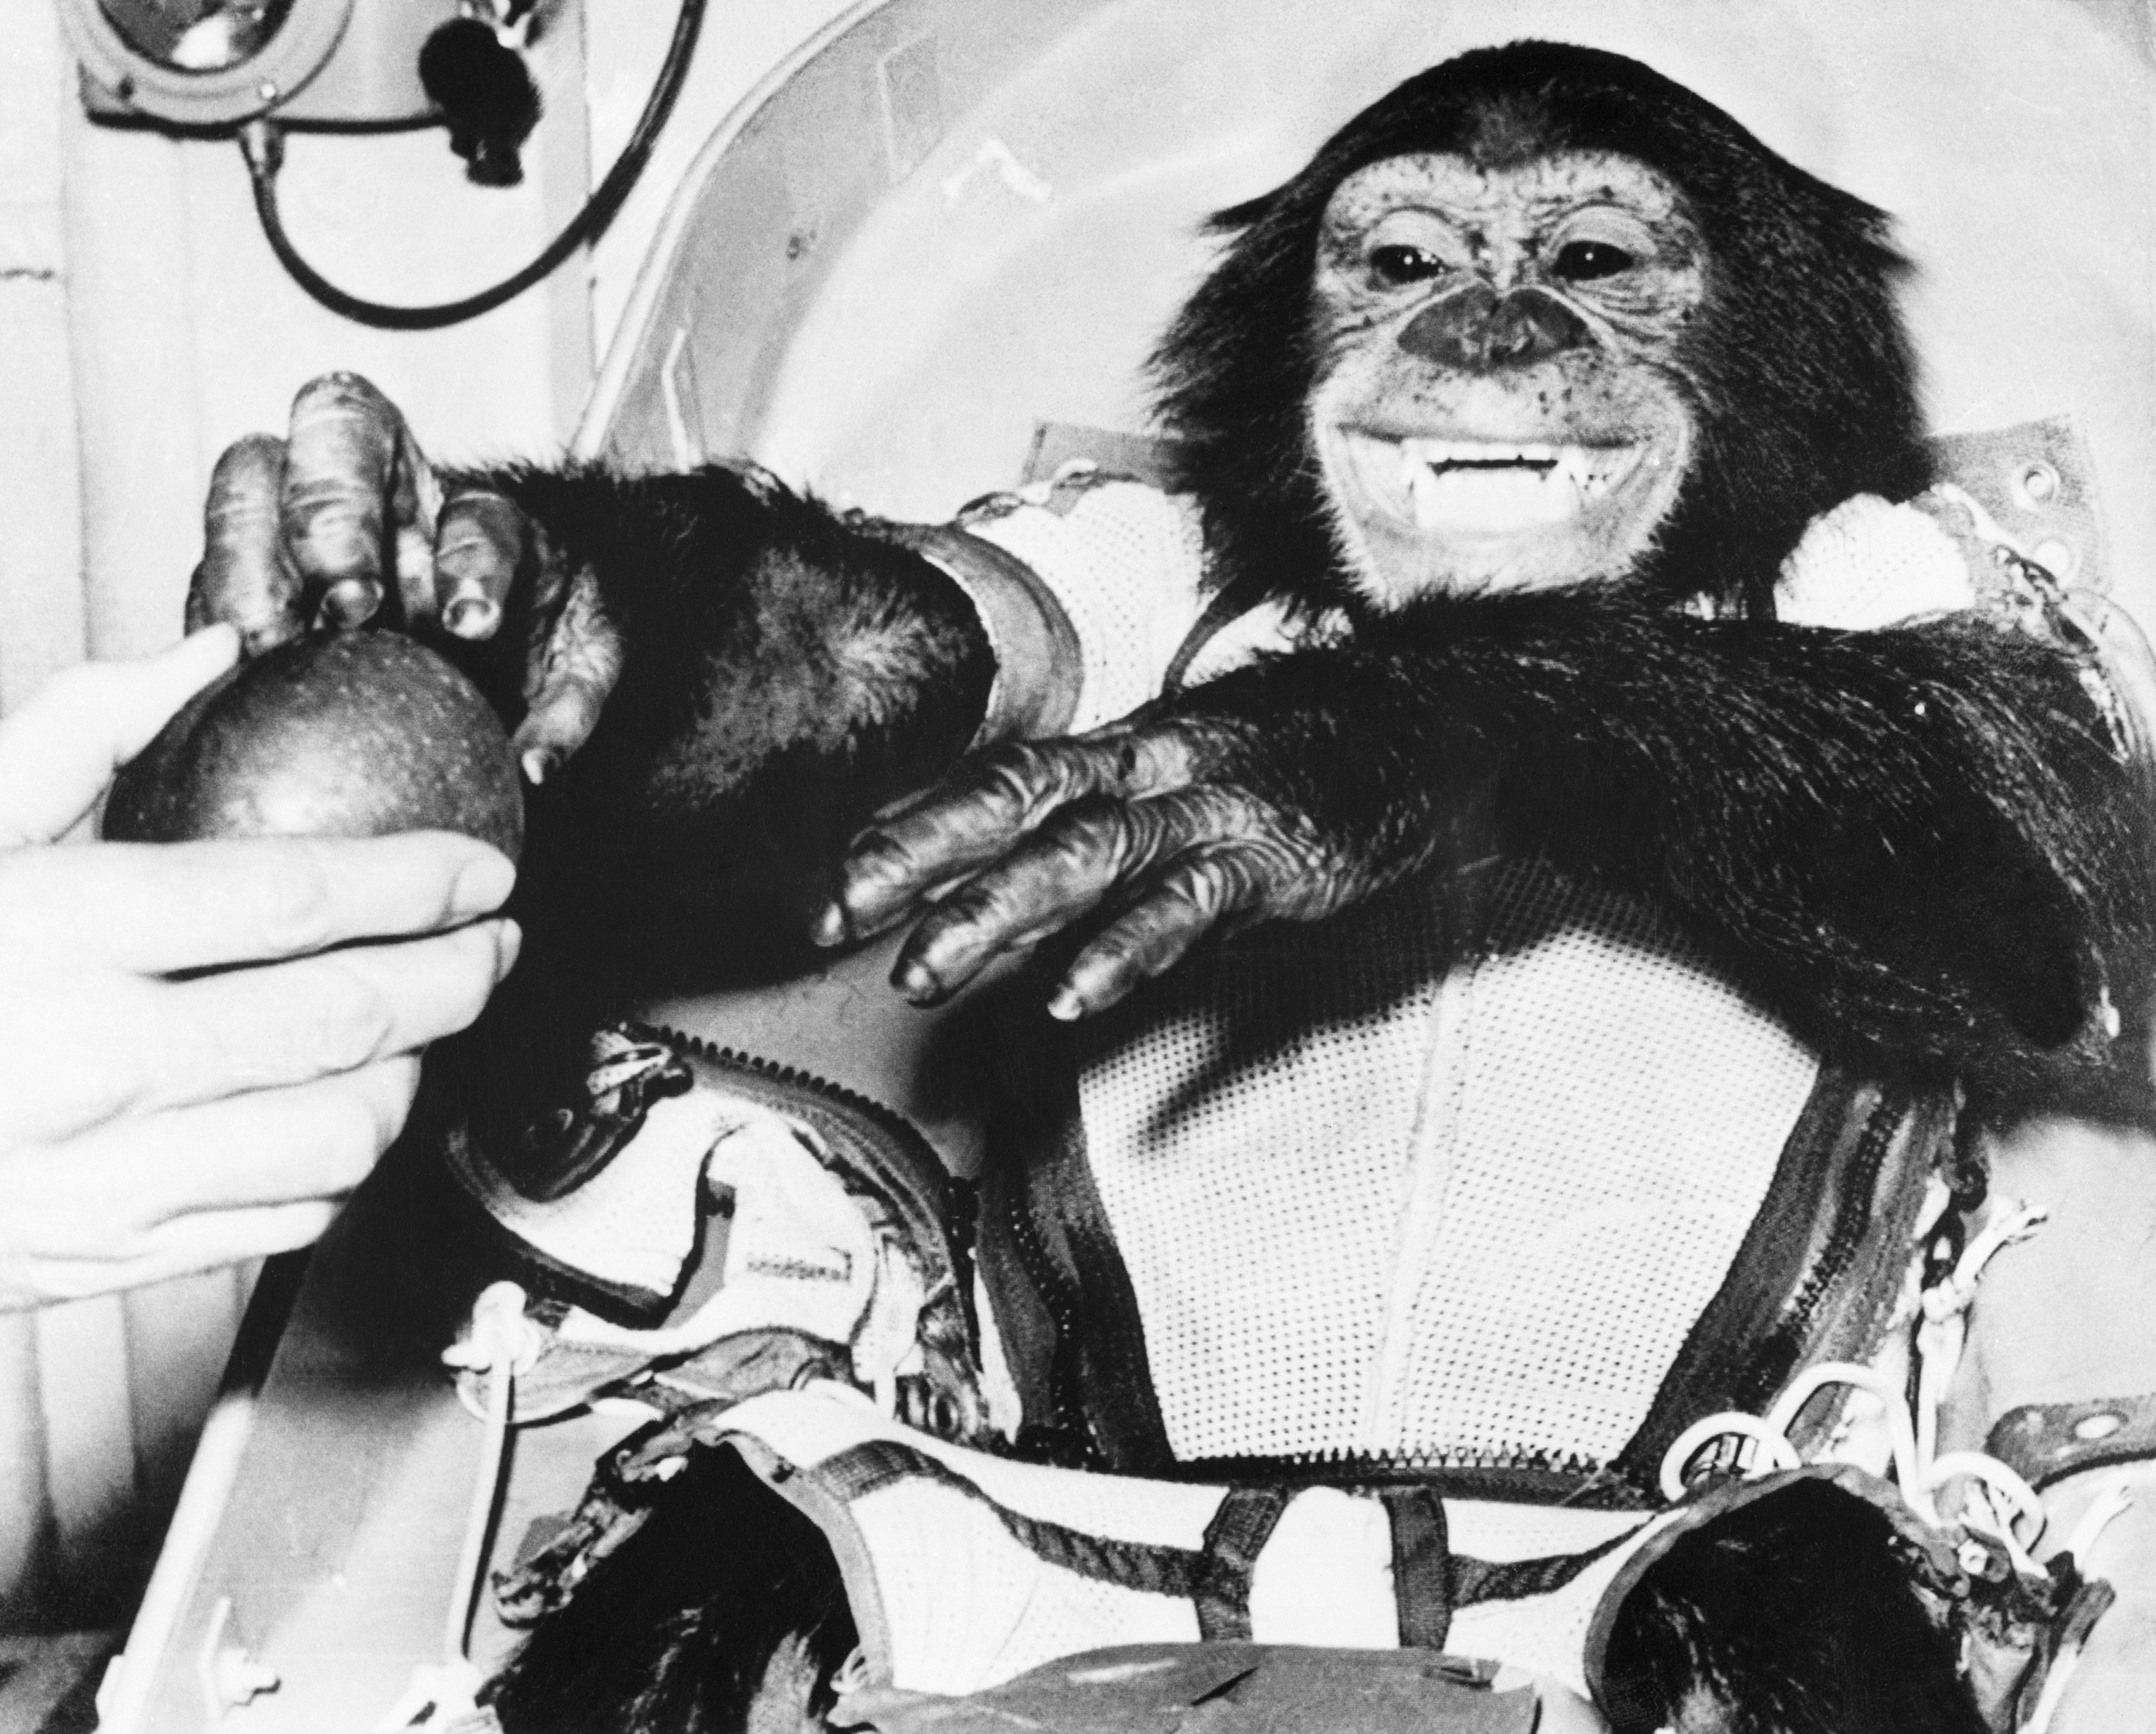 Ham the Chimpanzee in Spacesuit